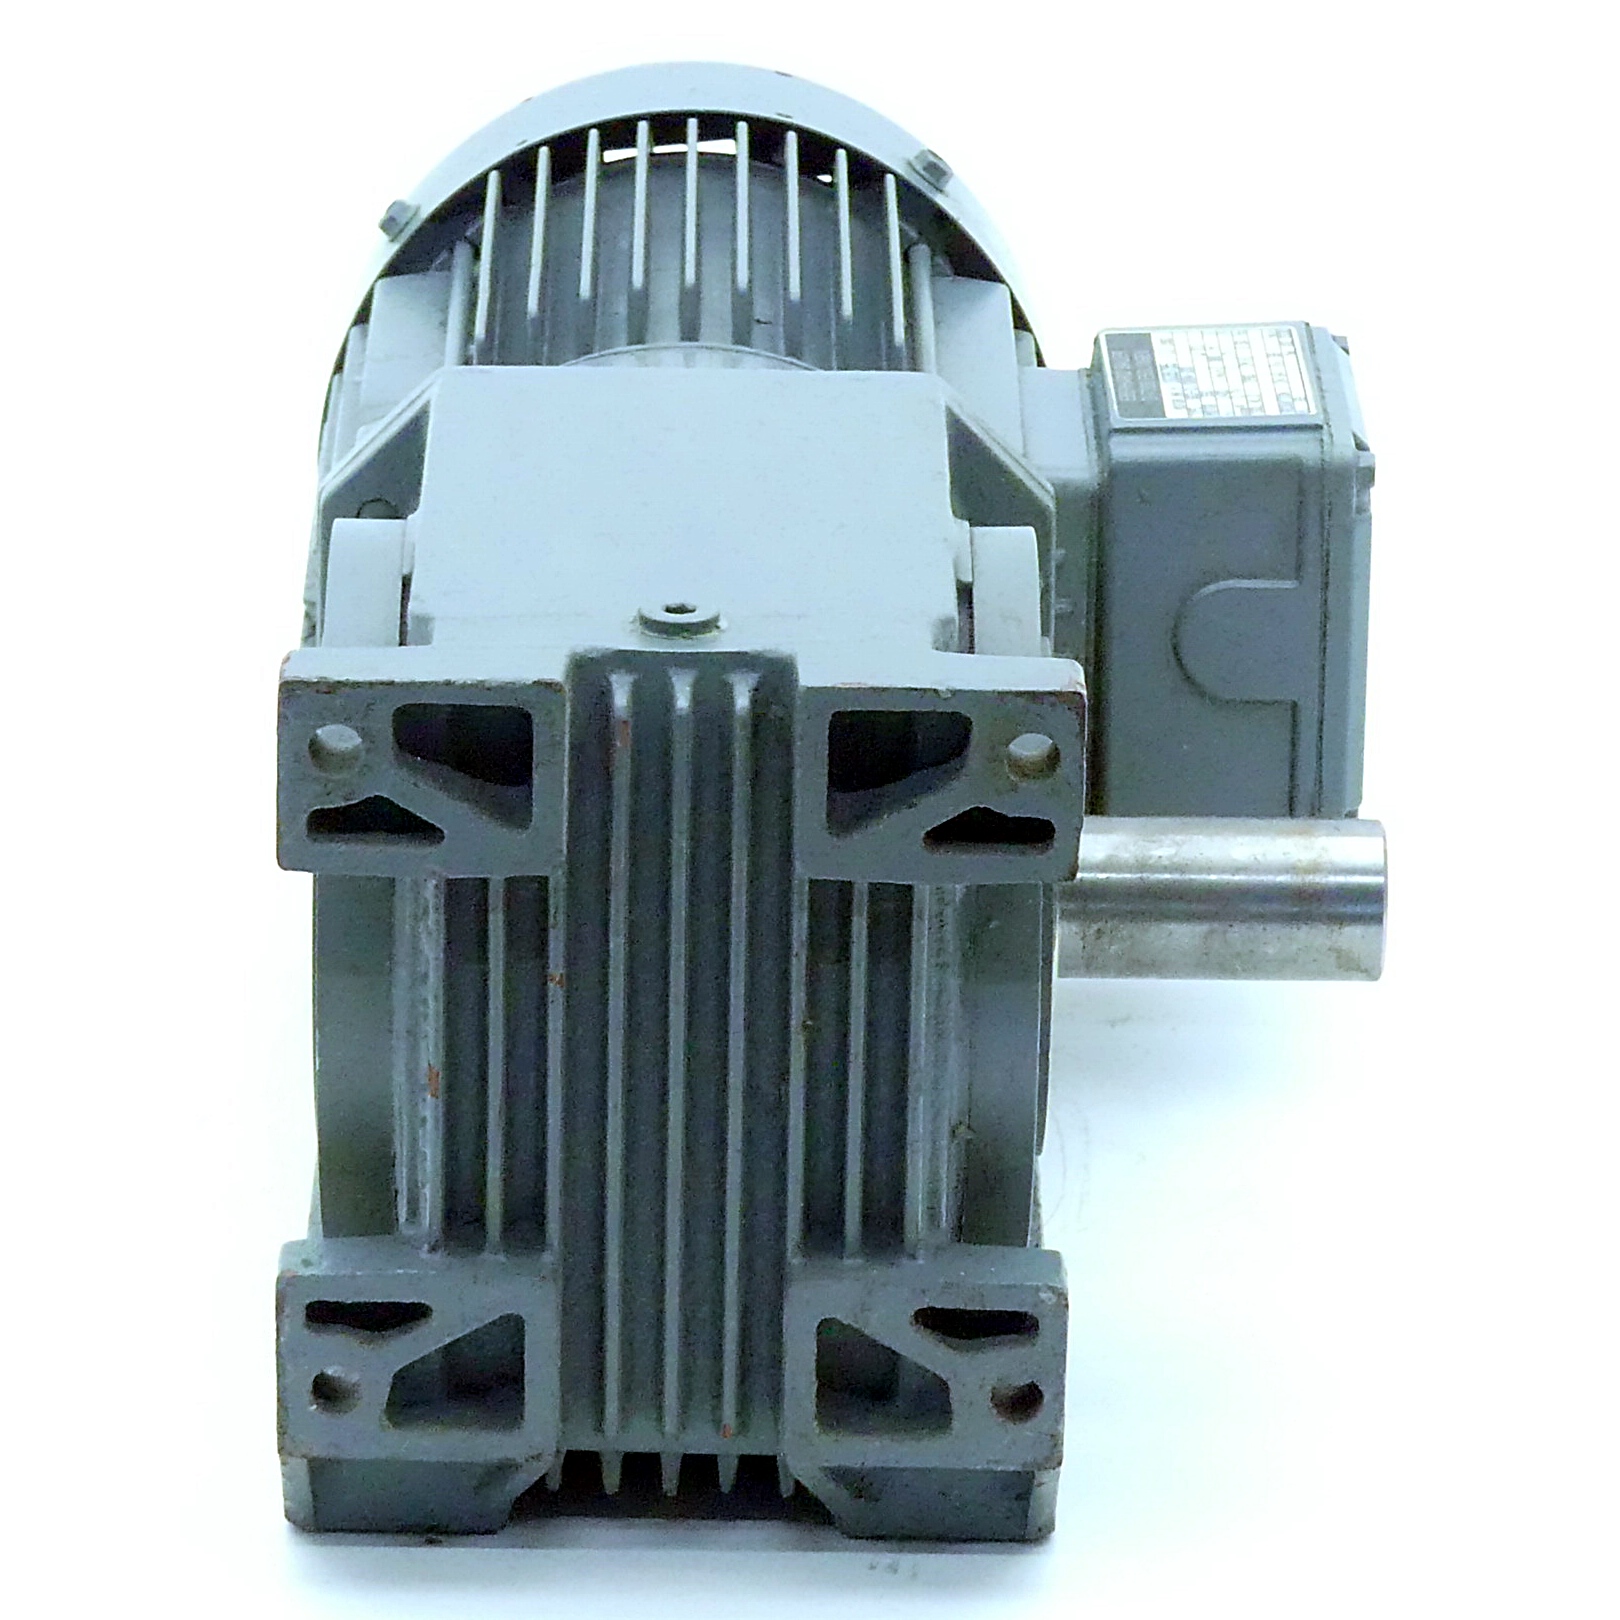 Getriebemotor SG3-21/DK84-200 